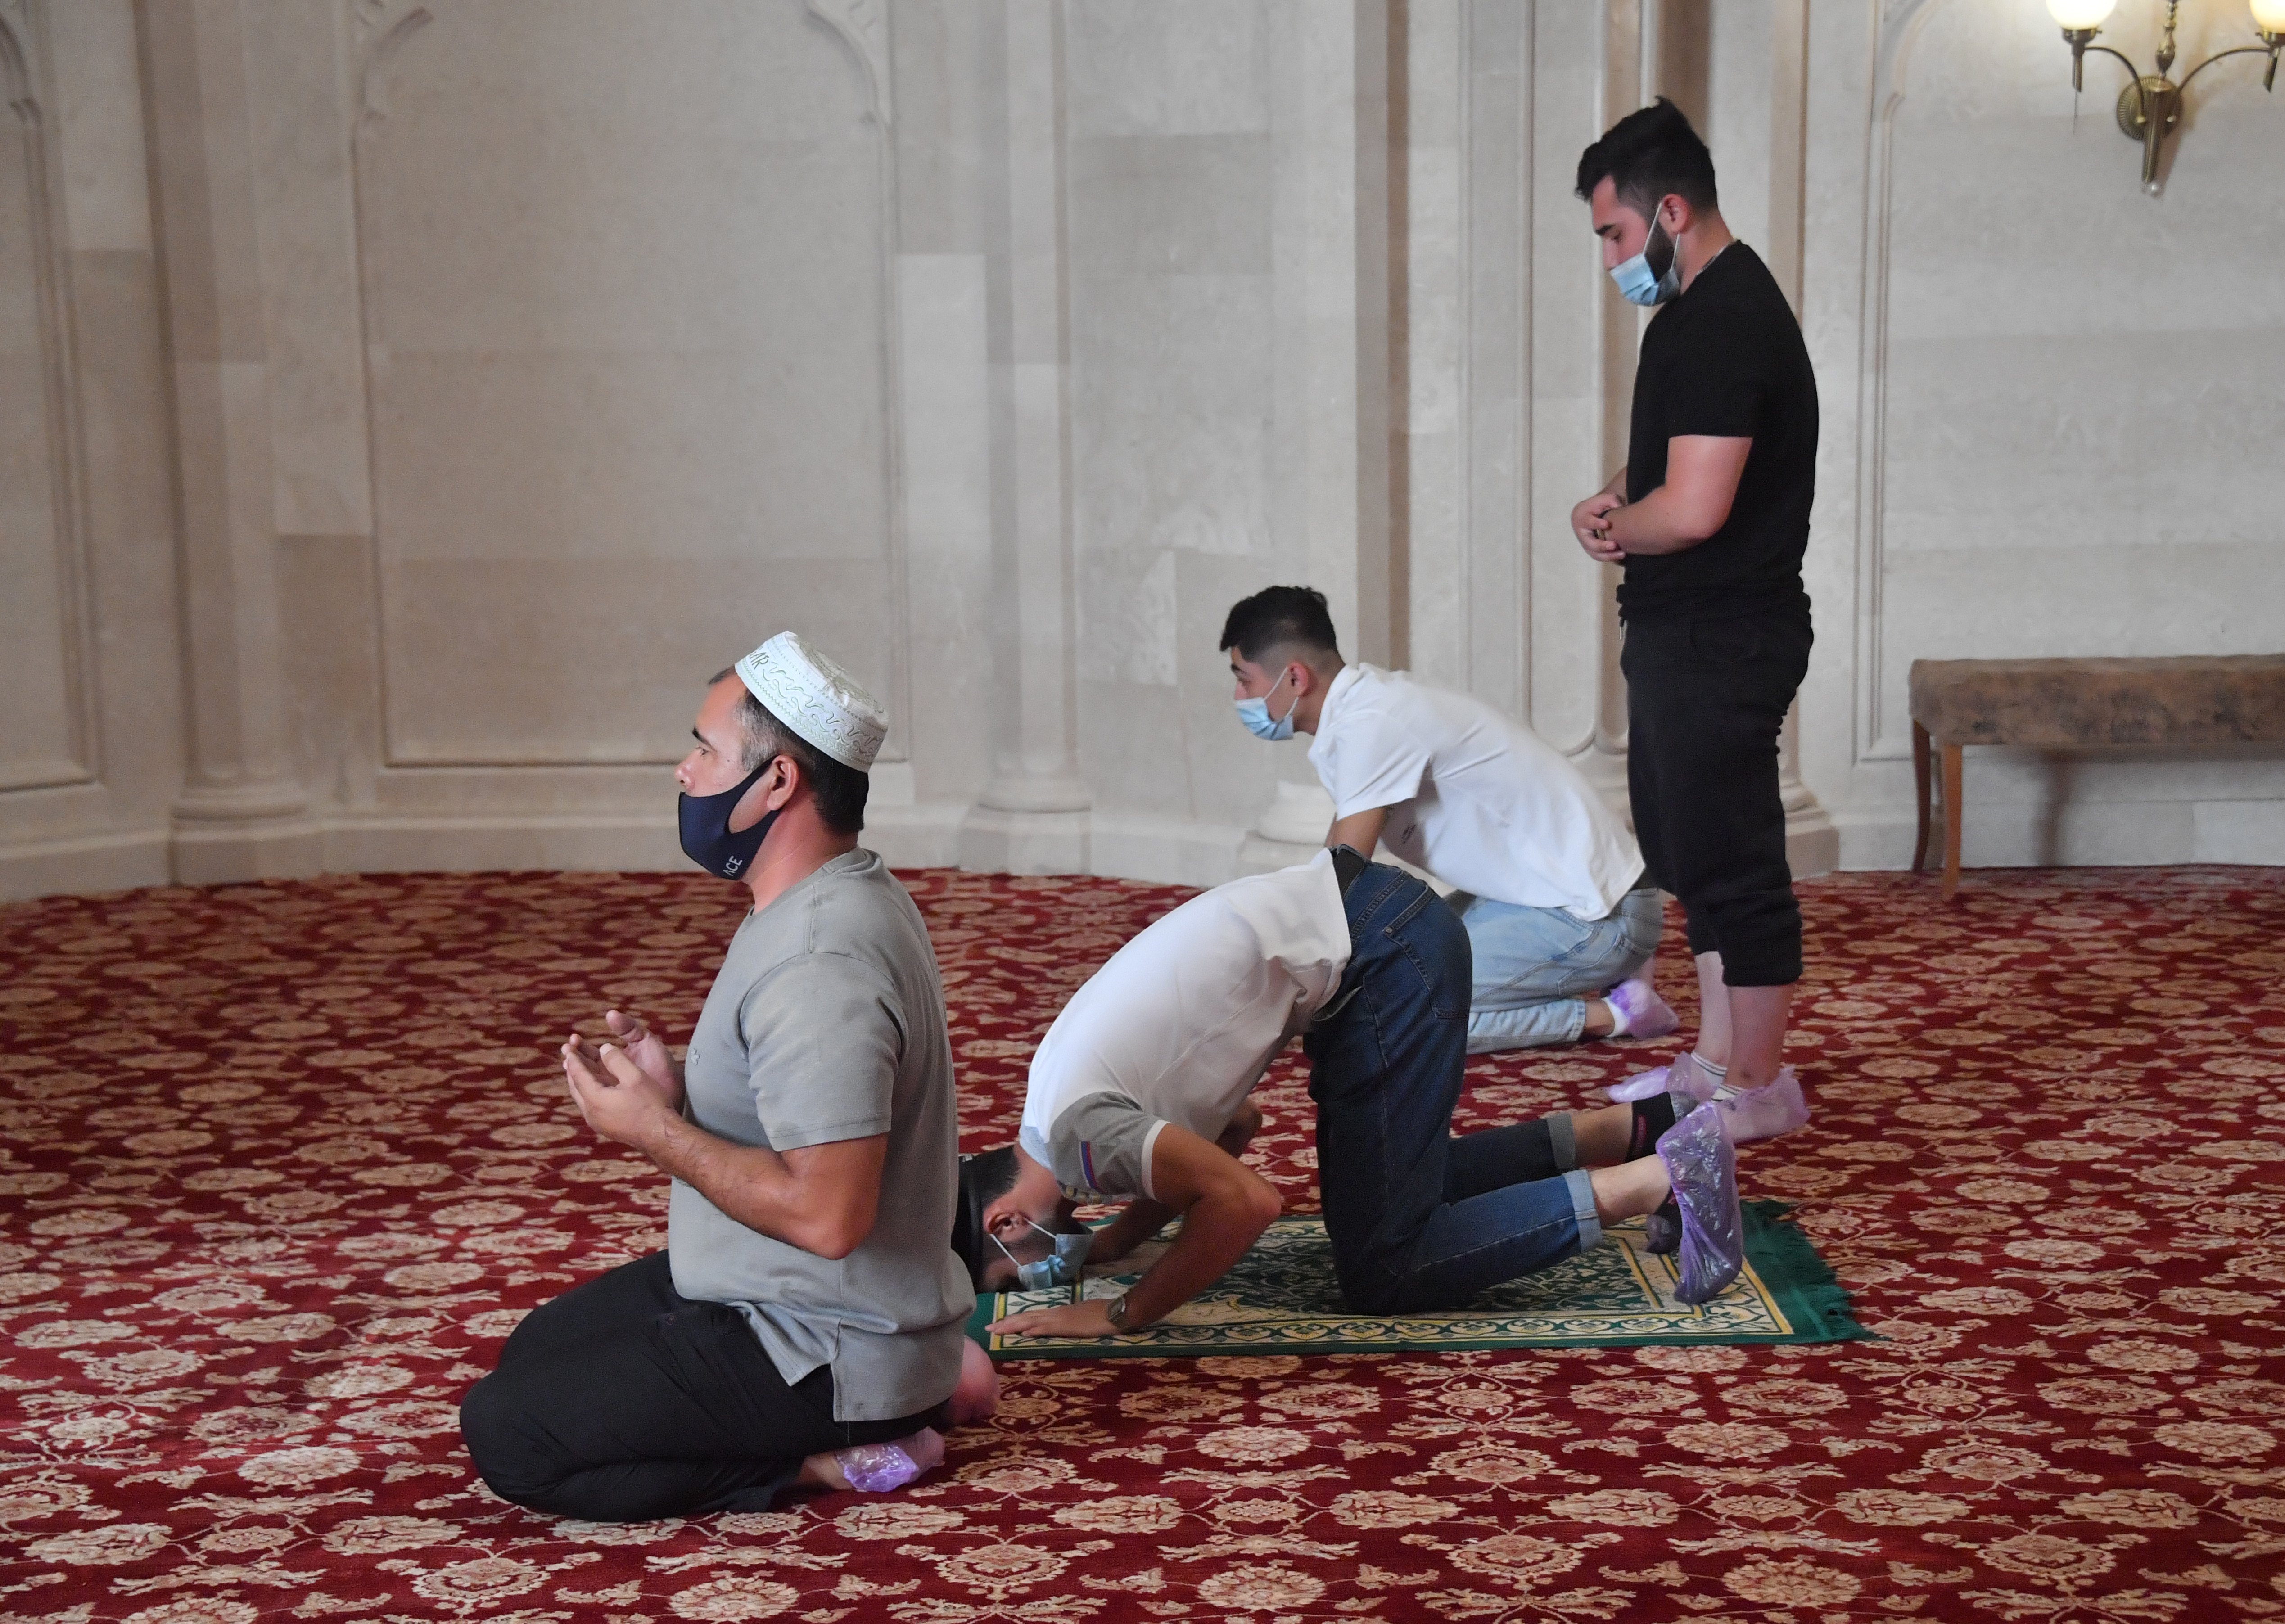 Имам в молитве. Мусульмане молятся в мечети. Коллективный намаз в мечети. Мужчина в мечети. Молебны мусульман в мечети.